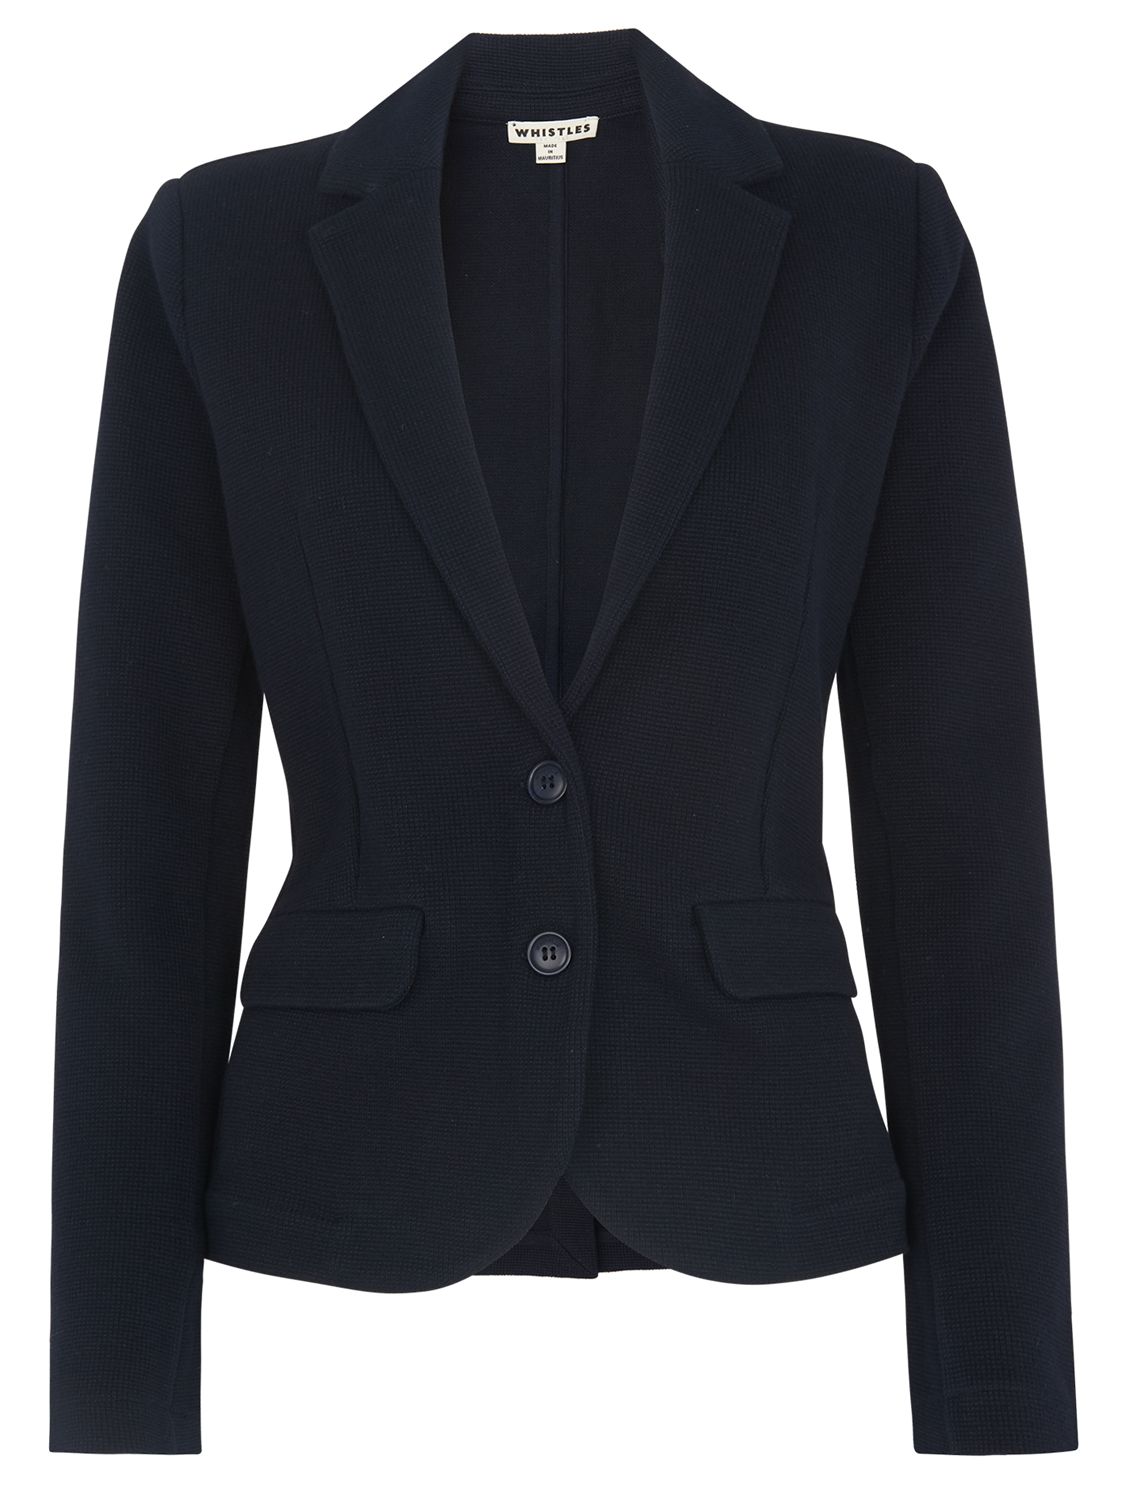 Whistles Slim Jersey Jacket, Navy at John Lewis & Partners